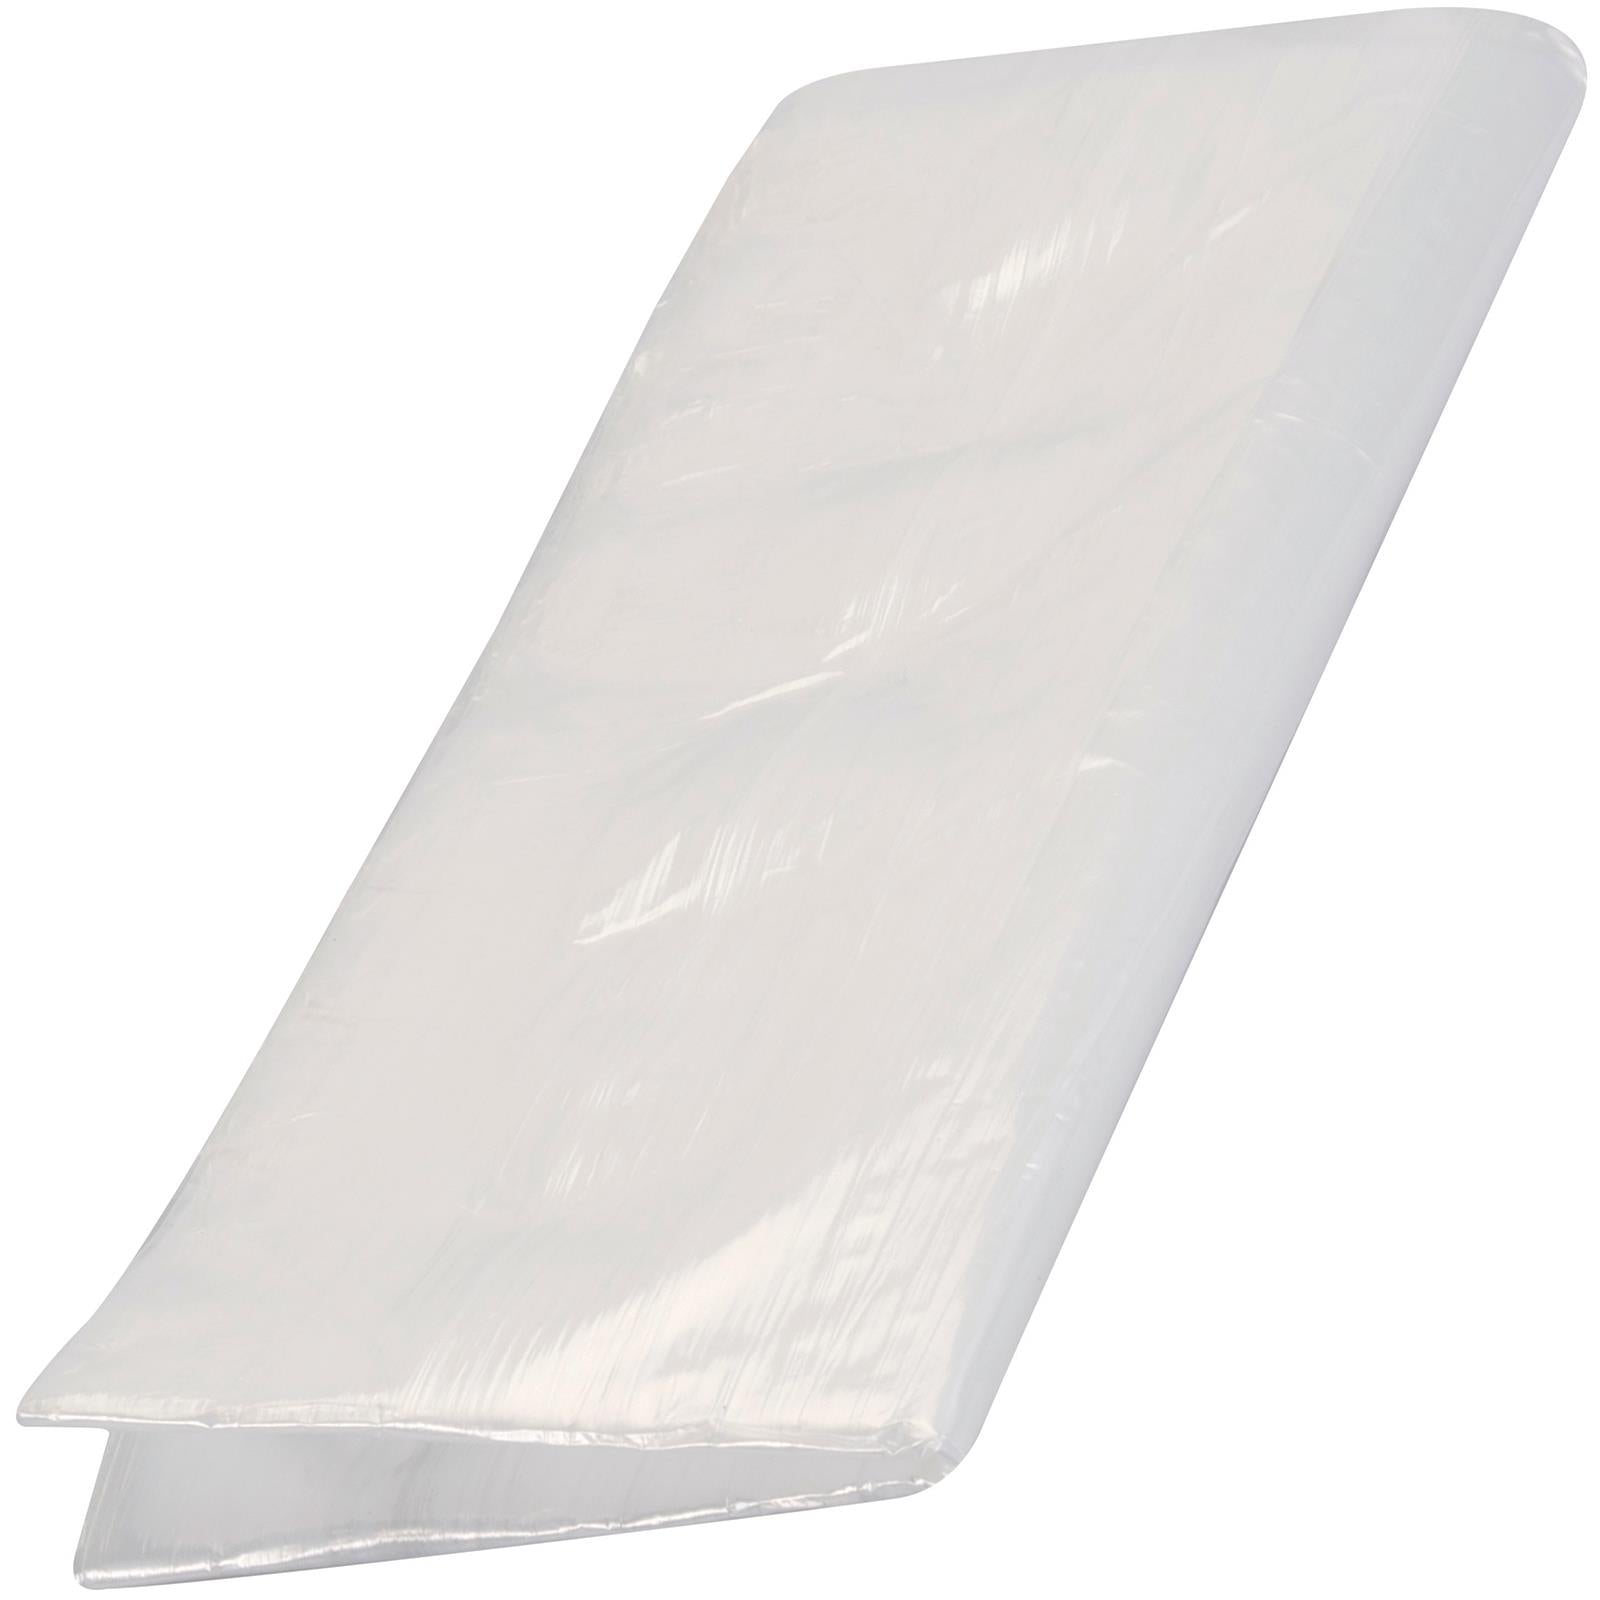 Silverline 3.6 x 2.7m Polythene Dust Sheet